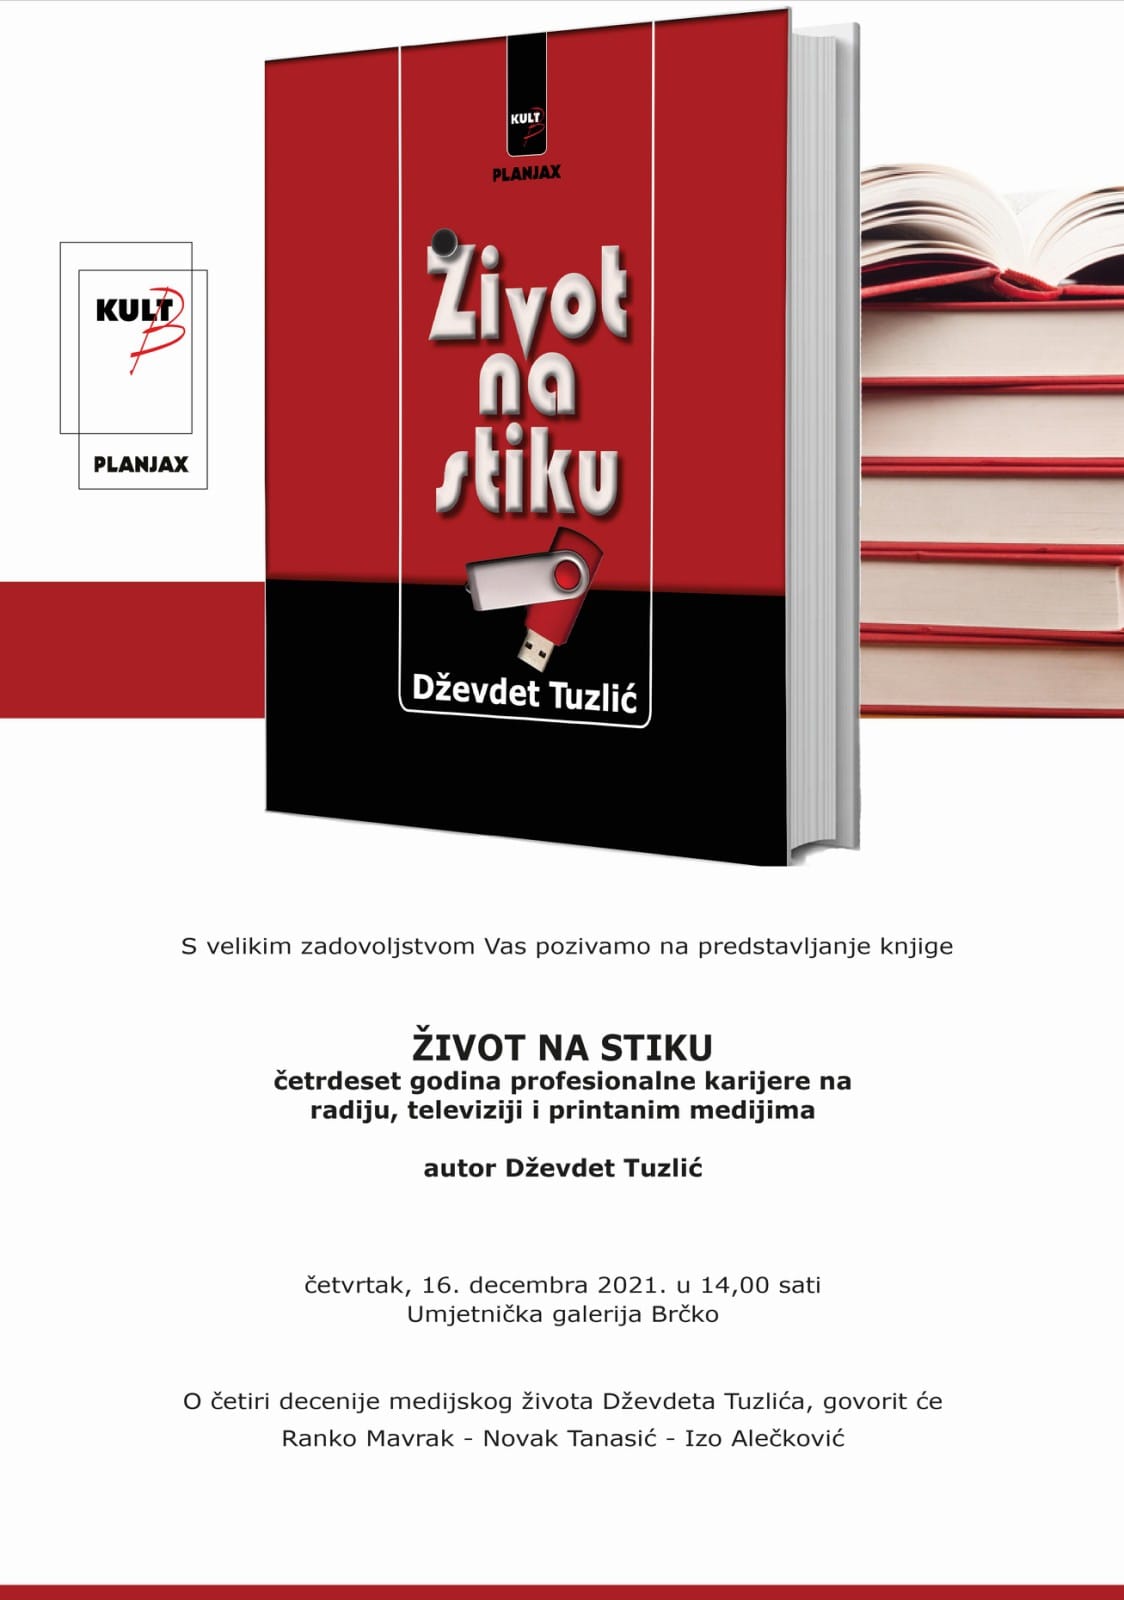 Promocija knjige „Život na stiku“, novinara Dževdeta Tuzlića